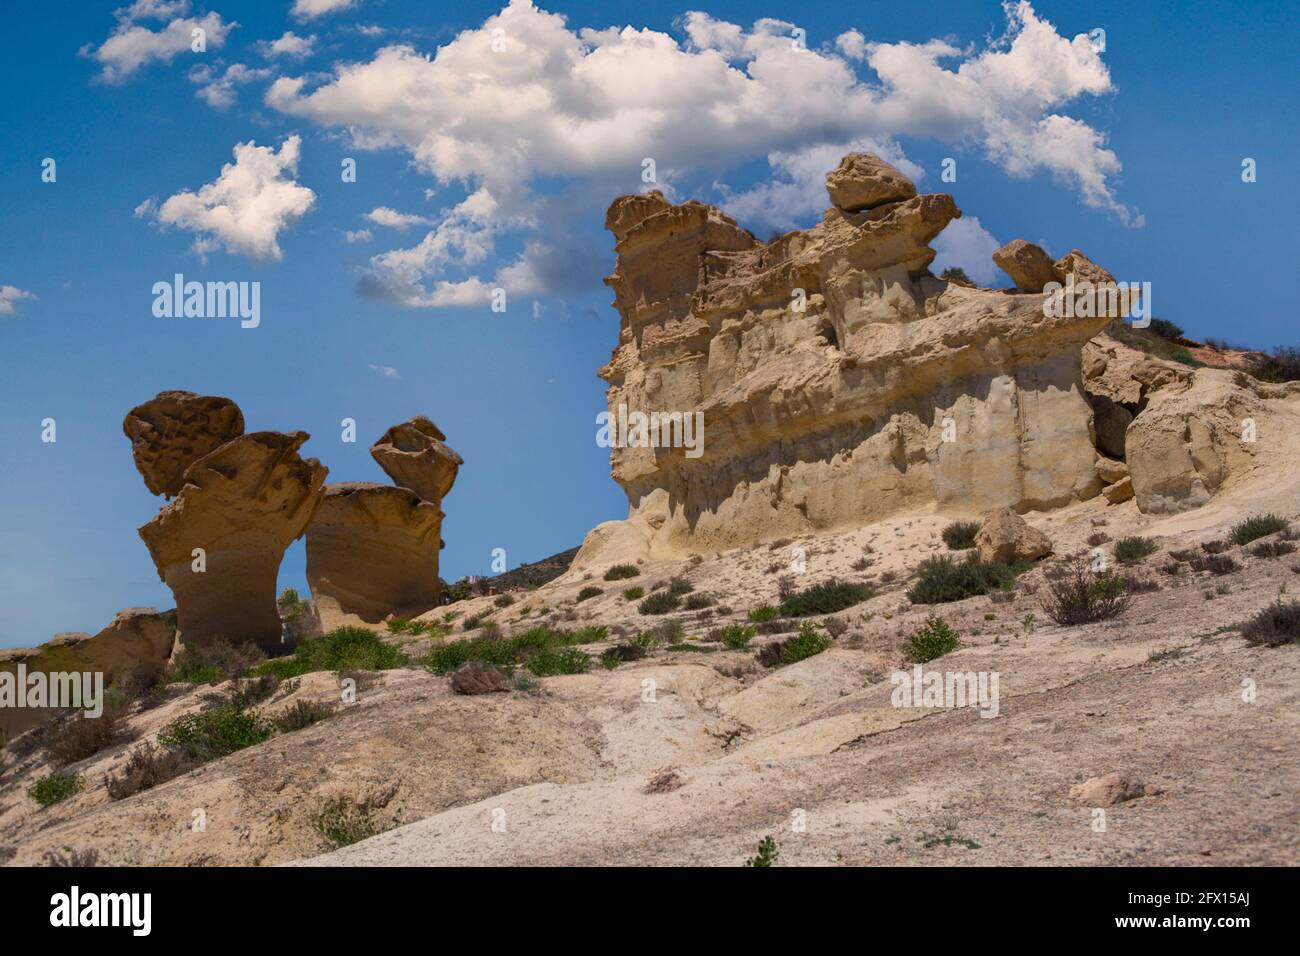 Vista fantástica de formas caprichosas producidas por la erosión en las montañas, Bolnuevo, Mazarrón, Murcia, España, Foto de stock